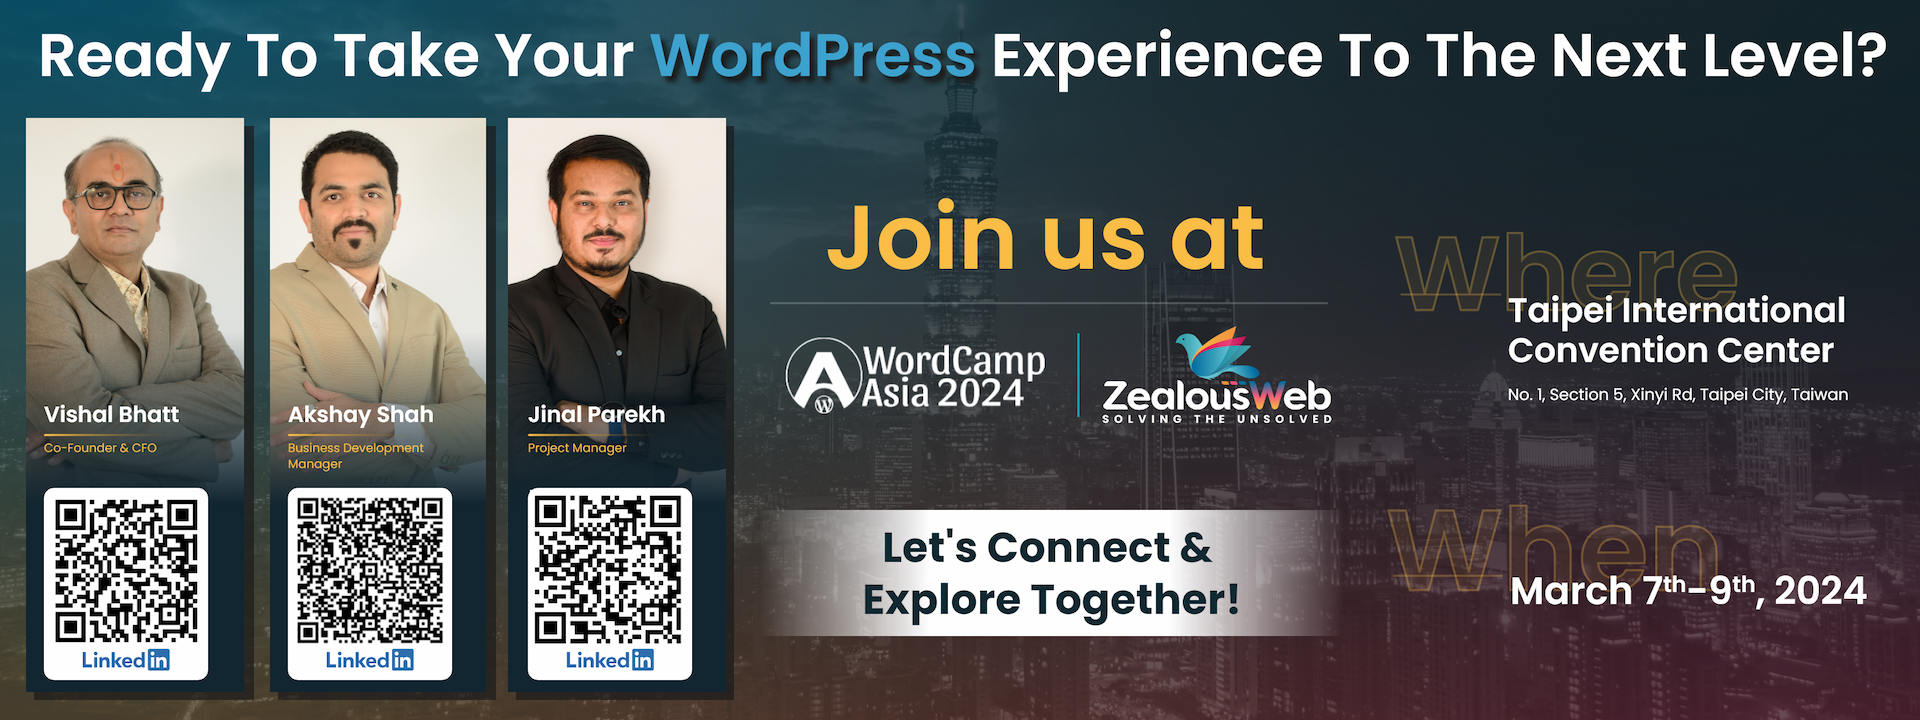 ZealousWeb Joins WordCamp Asia 2024